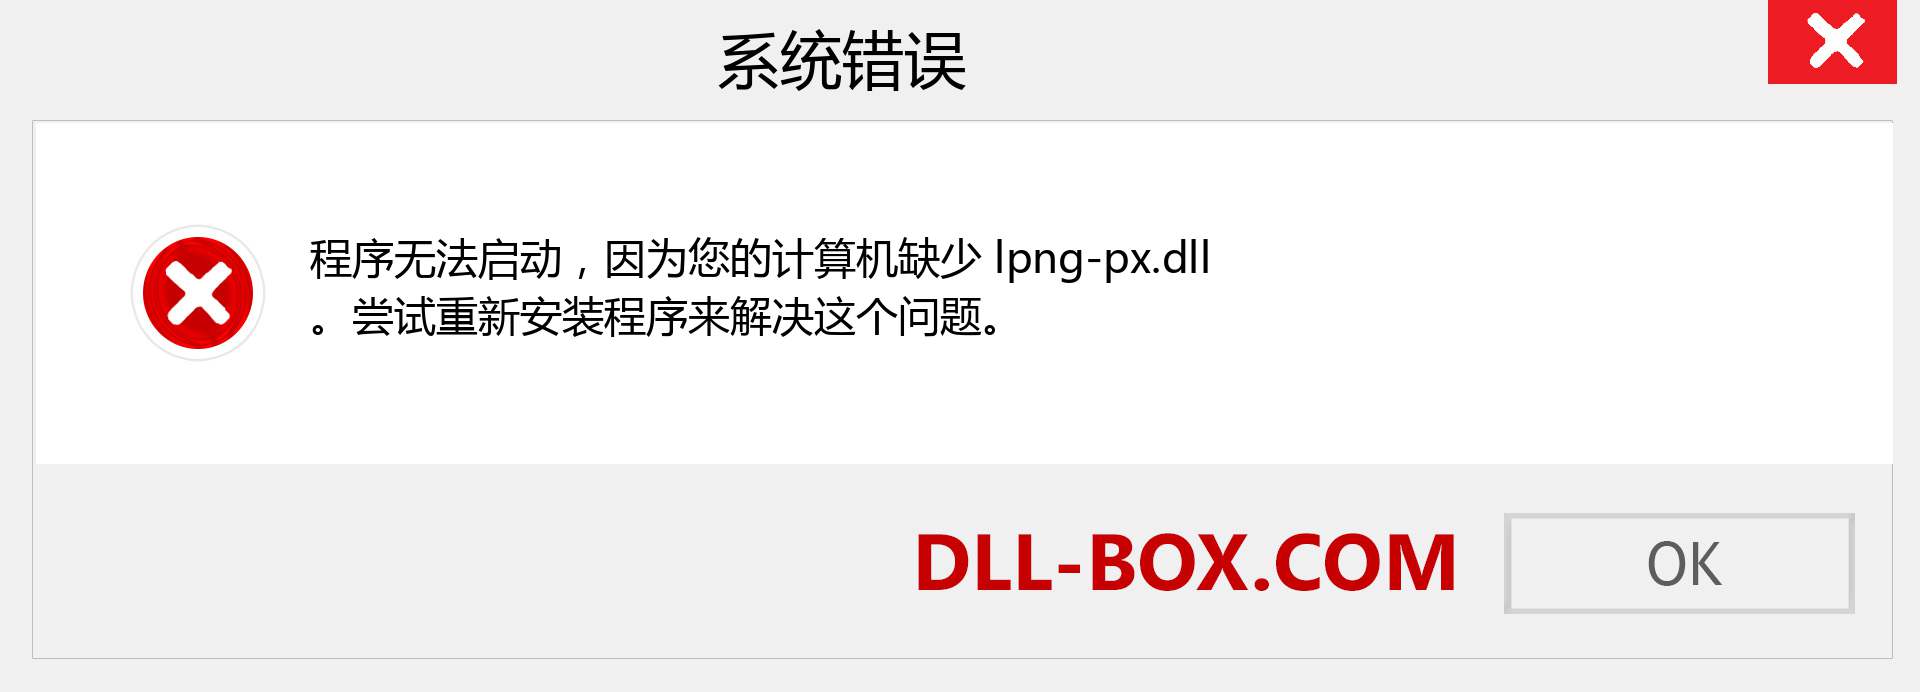 lpng-px.dll 文件丢失？。 适用于 Windows 7、8、10 的下载 - 修复 Windows、照片、图像上的 lpng-px dll 丢失错误